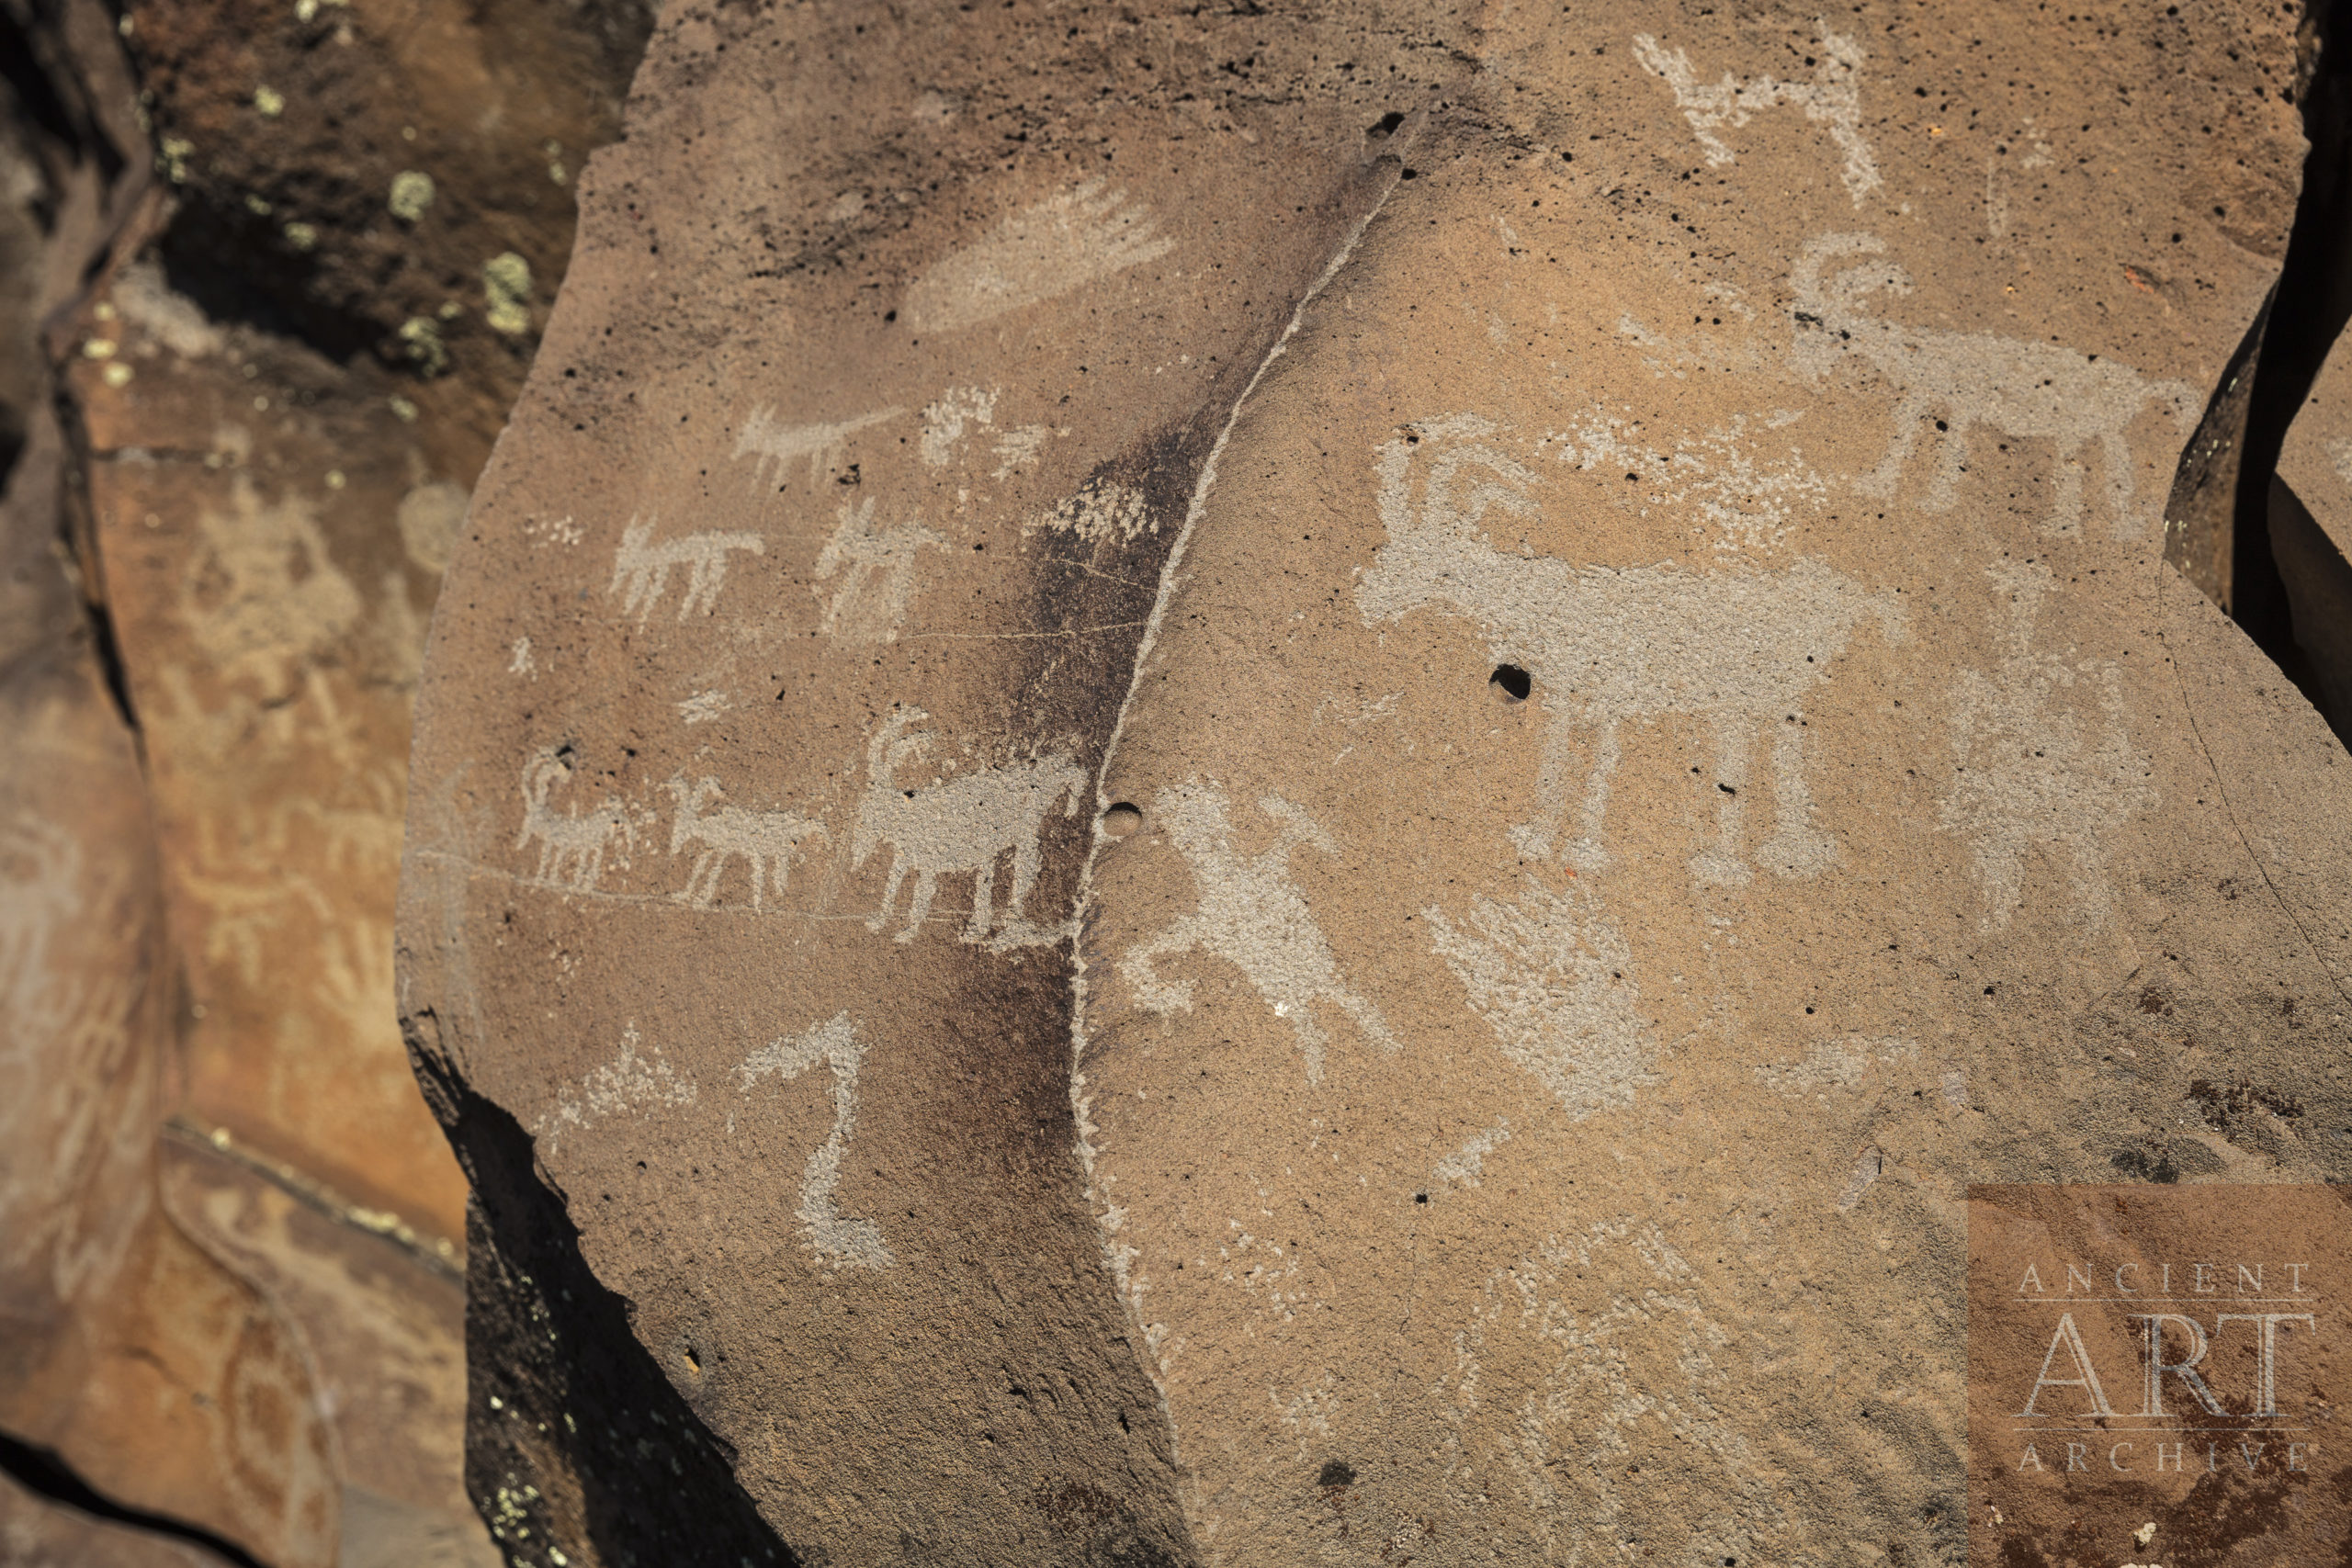 Nampaweap petroglyph site